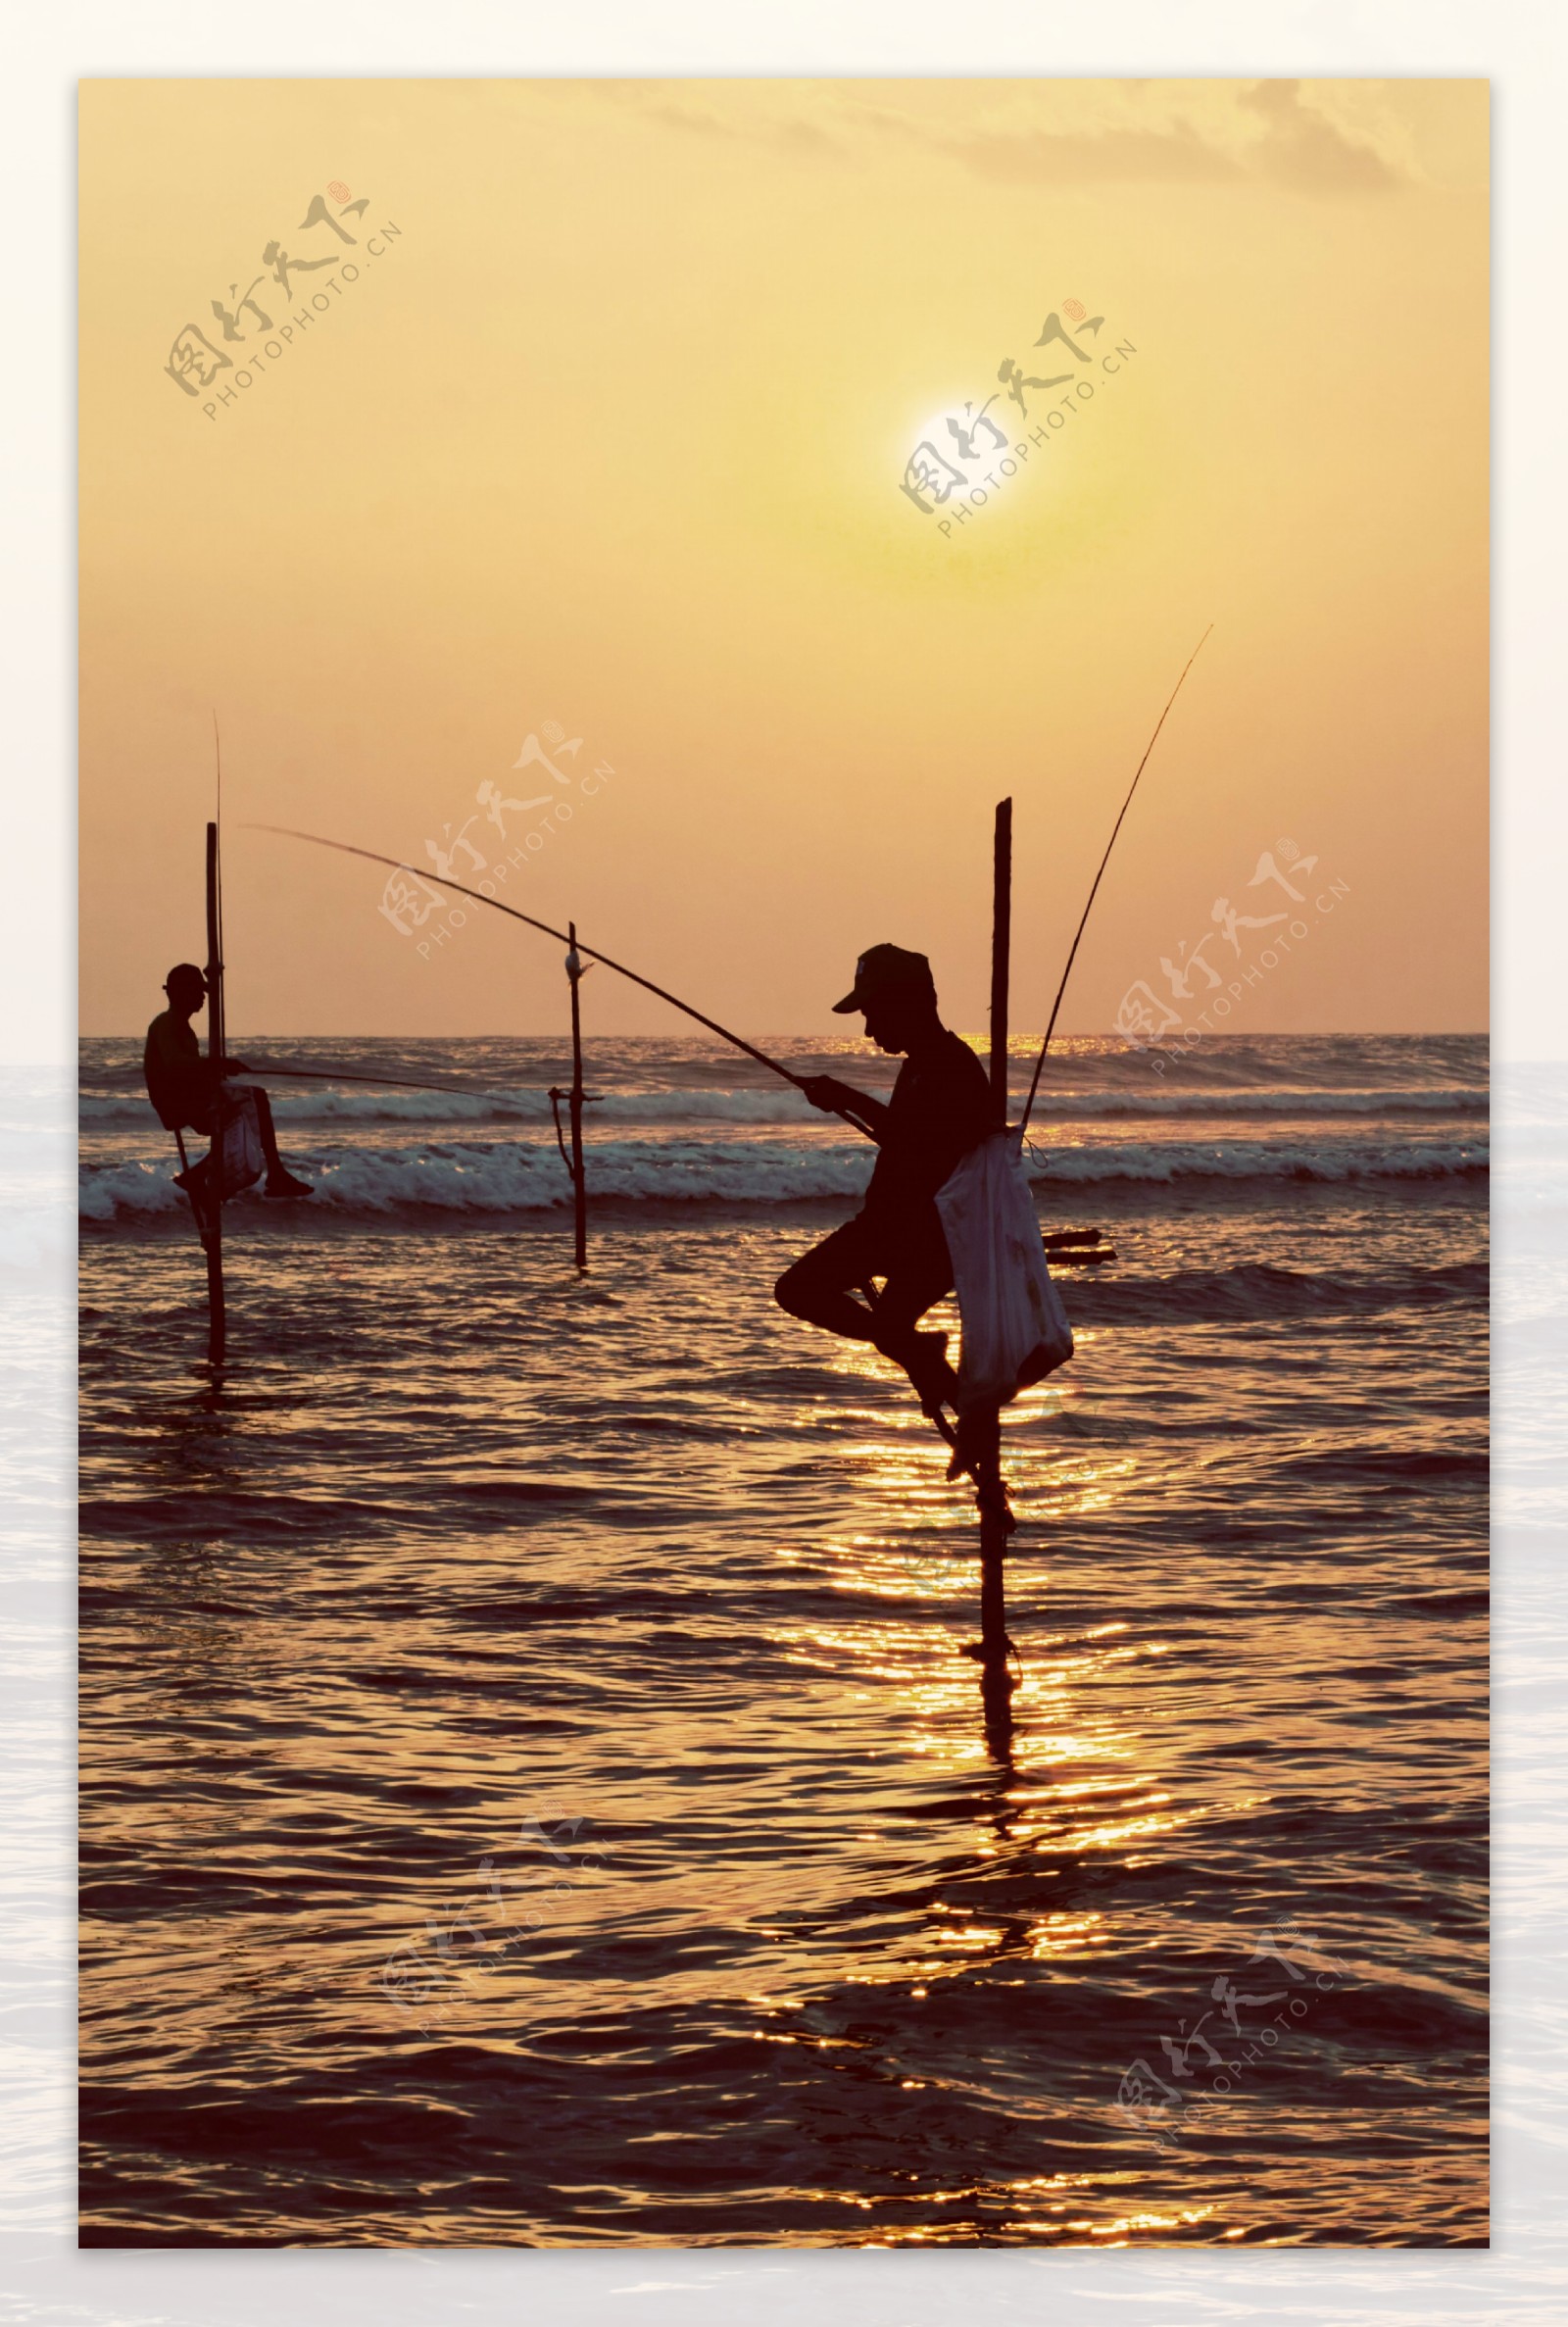 坐在海面上钓鱼的人图片